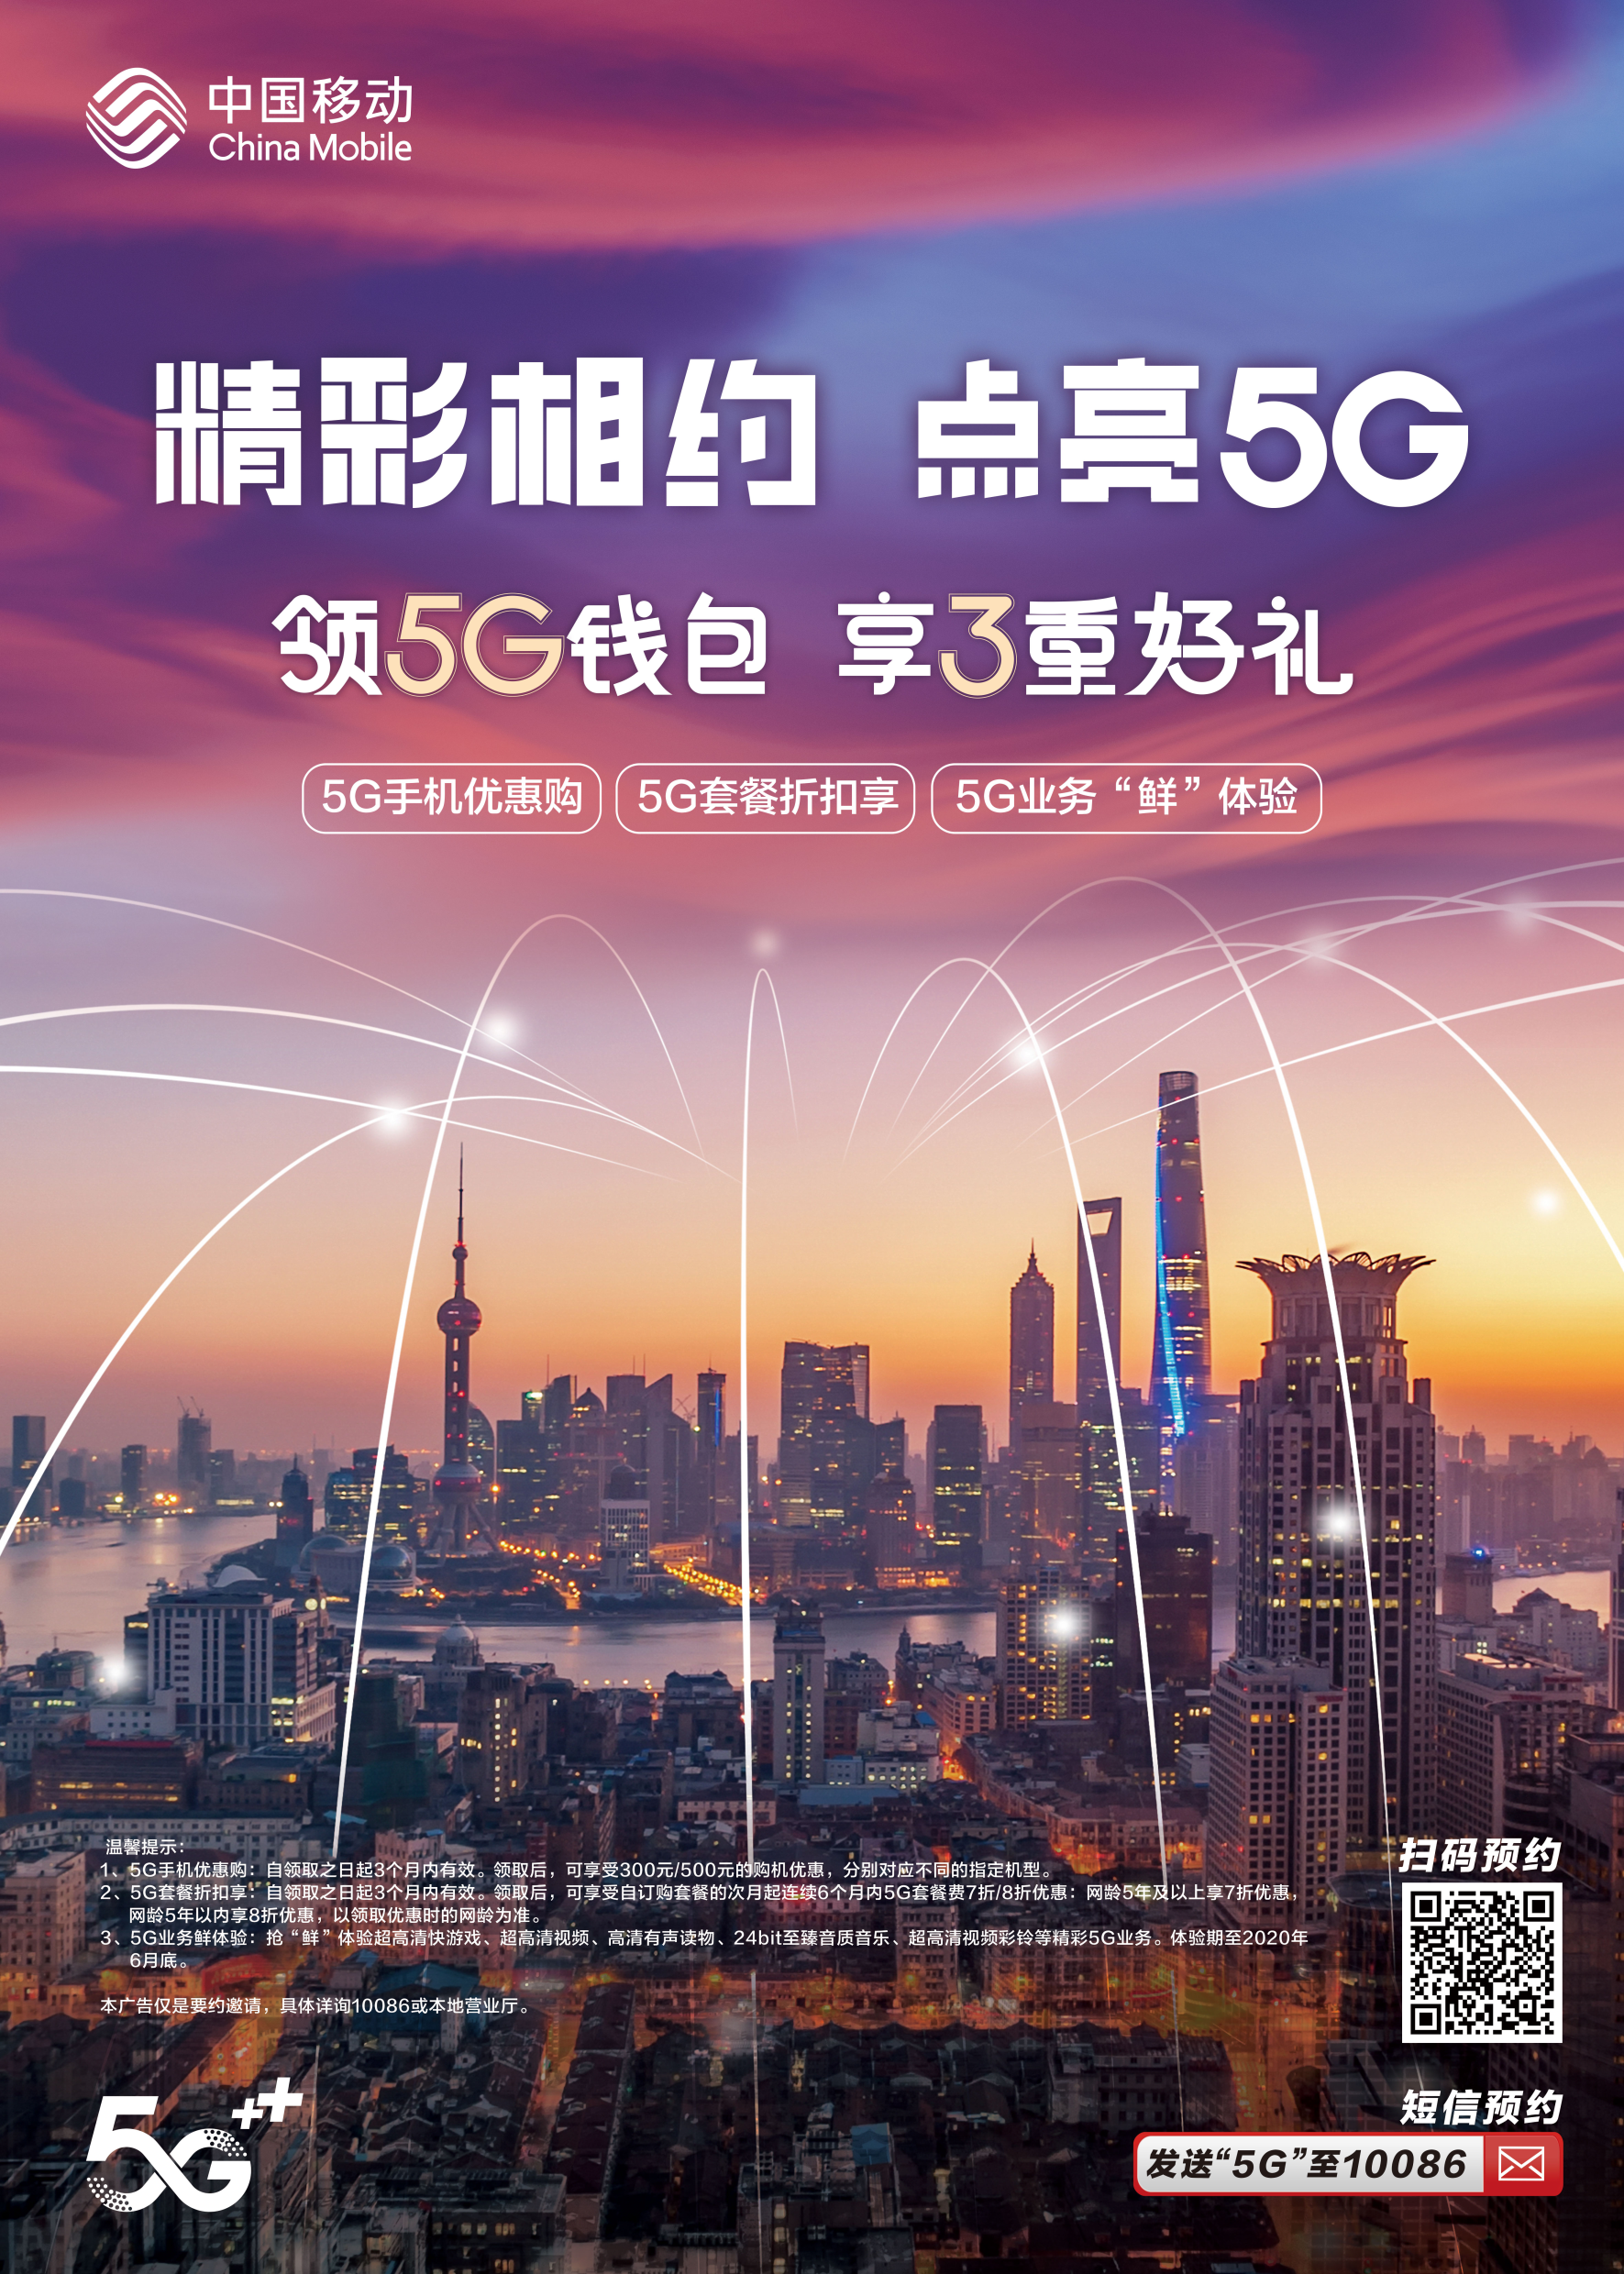 宁波余姚 5G 网络开通时间引关注，高速生活即将开启  第2张